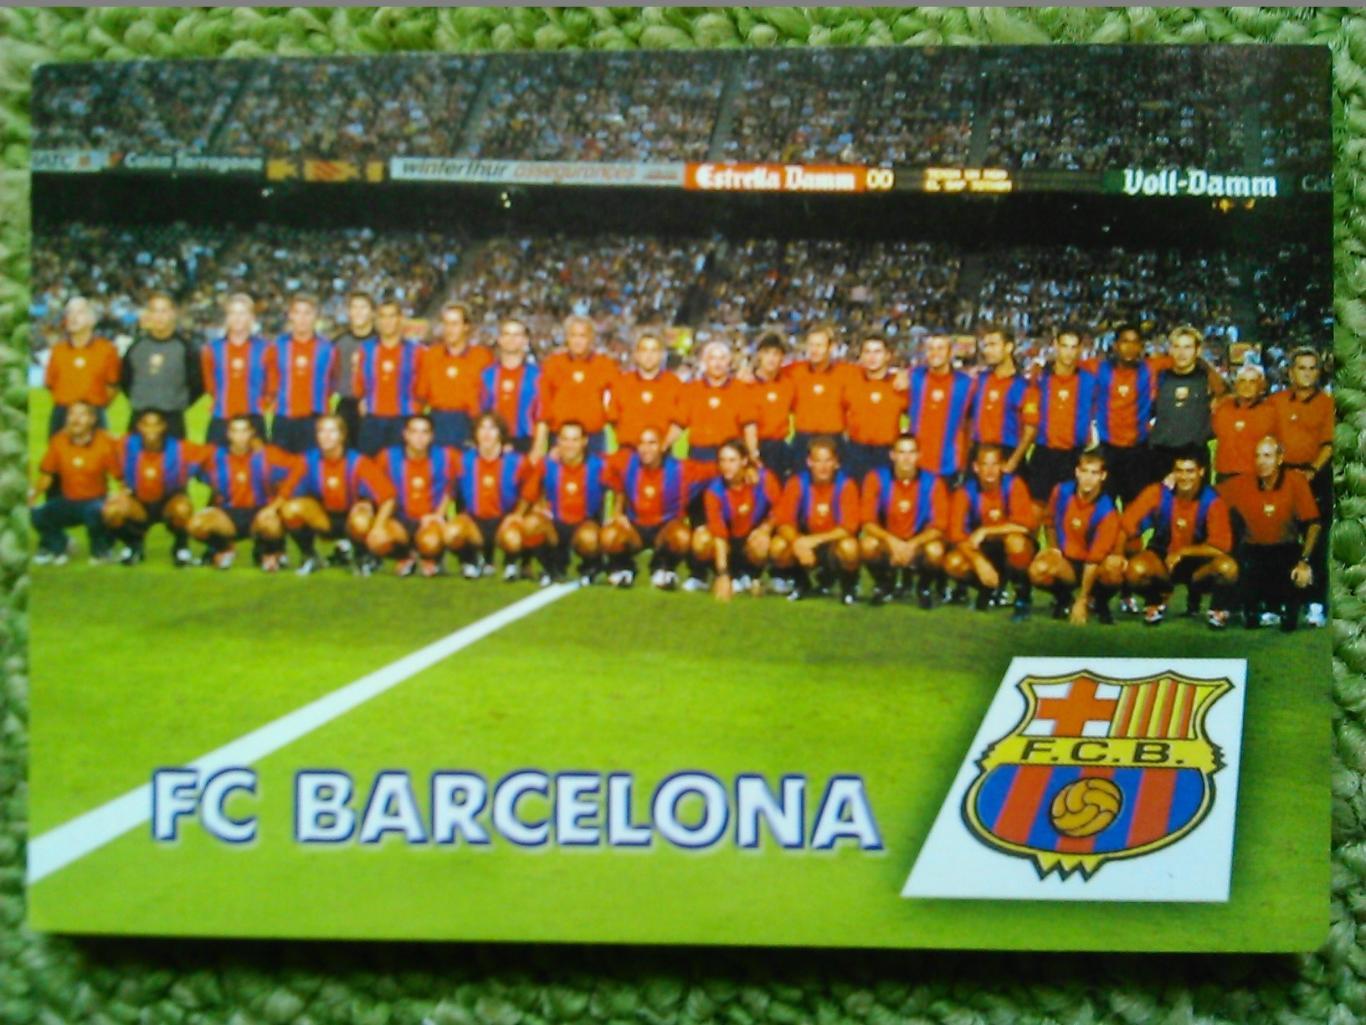 FC BARCELONA. БАРСЕЛОНА Іспанія. календарик 2002. оптом скидки до 45%